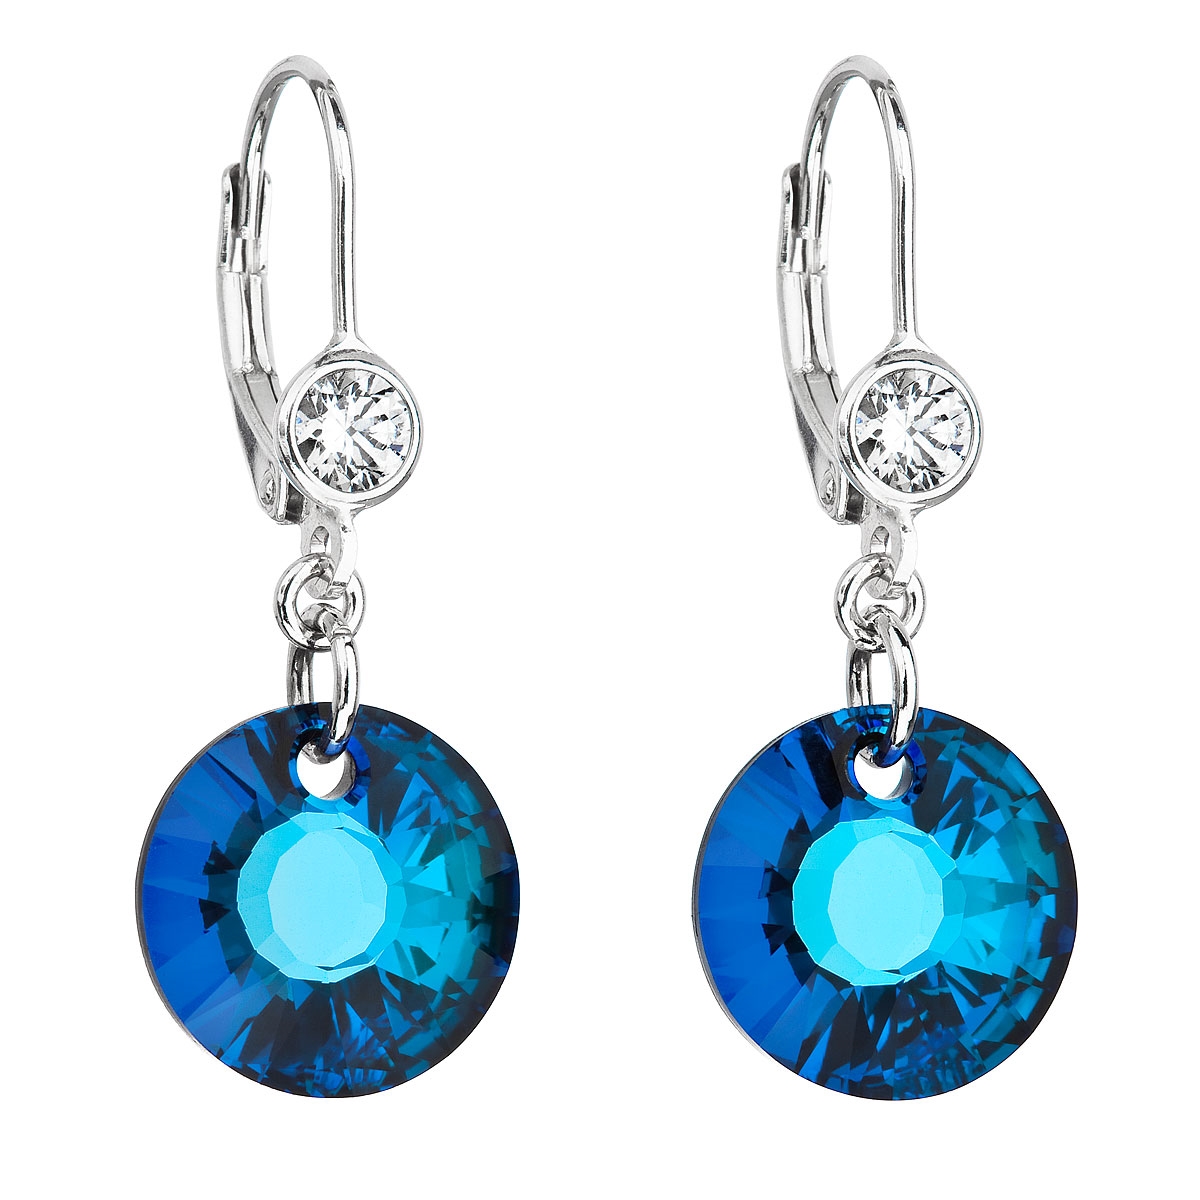 Strieborné náušnice visiace s kamienkami Crystals from Swarovski ® Bermuda Blue